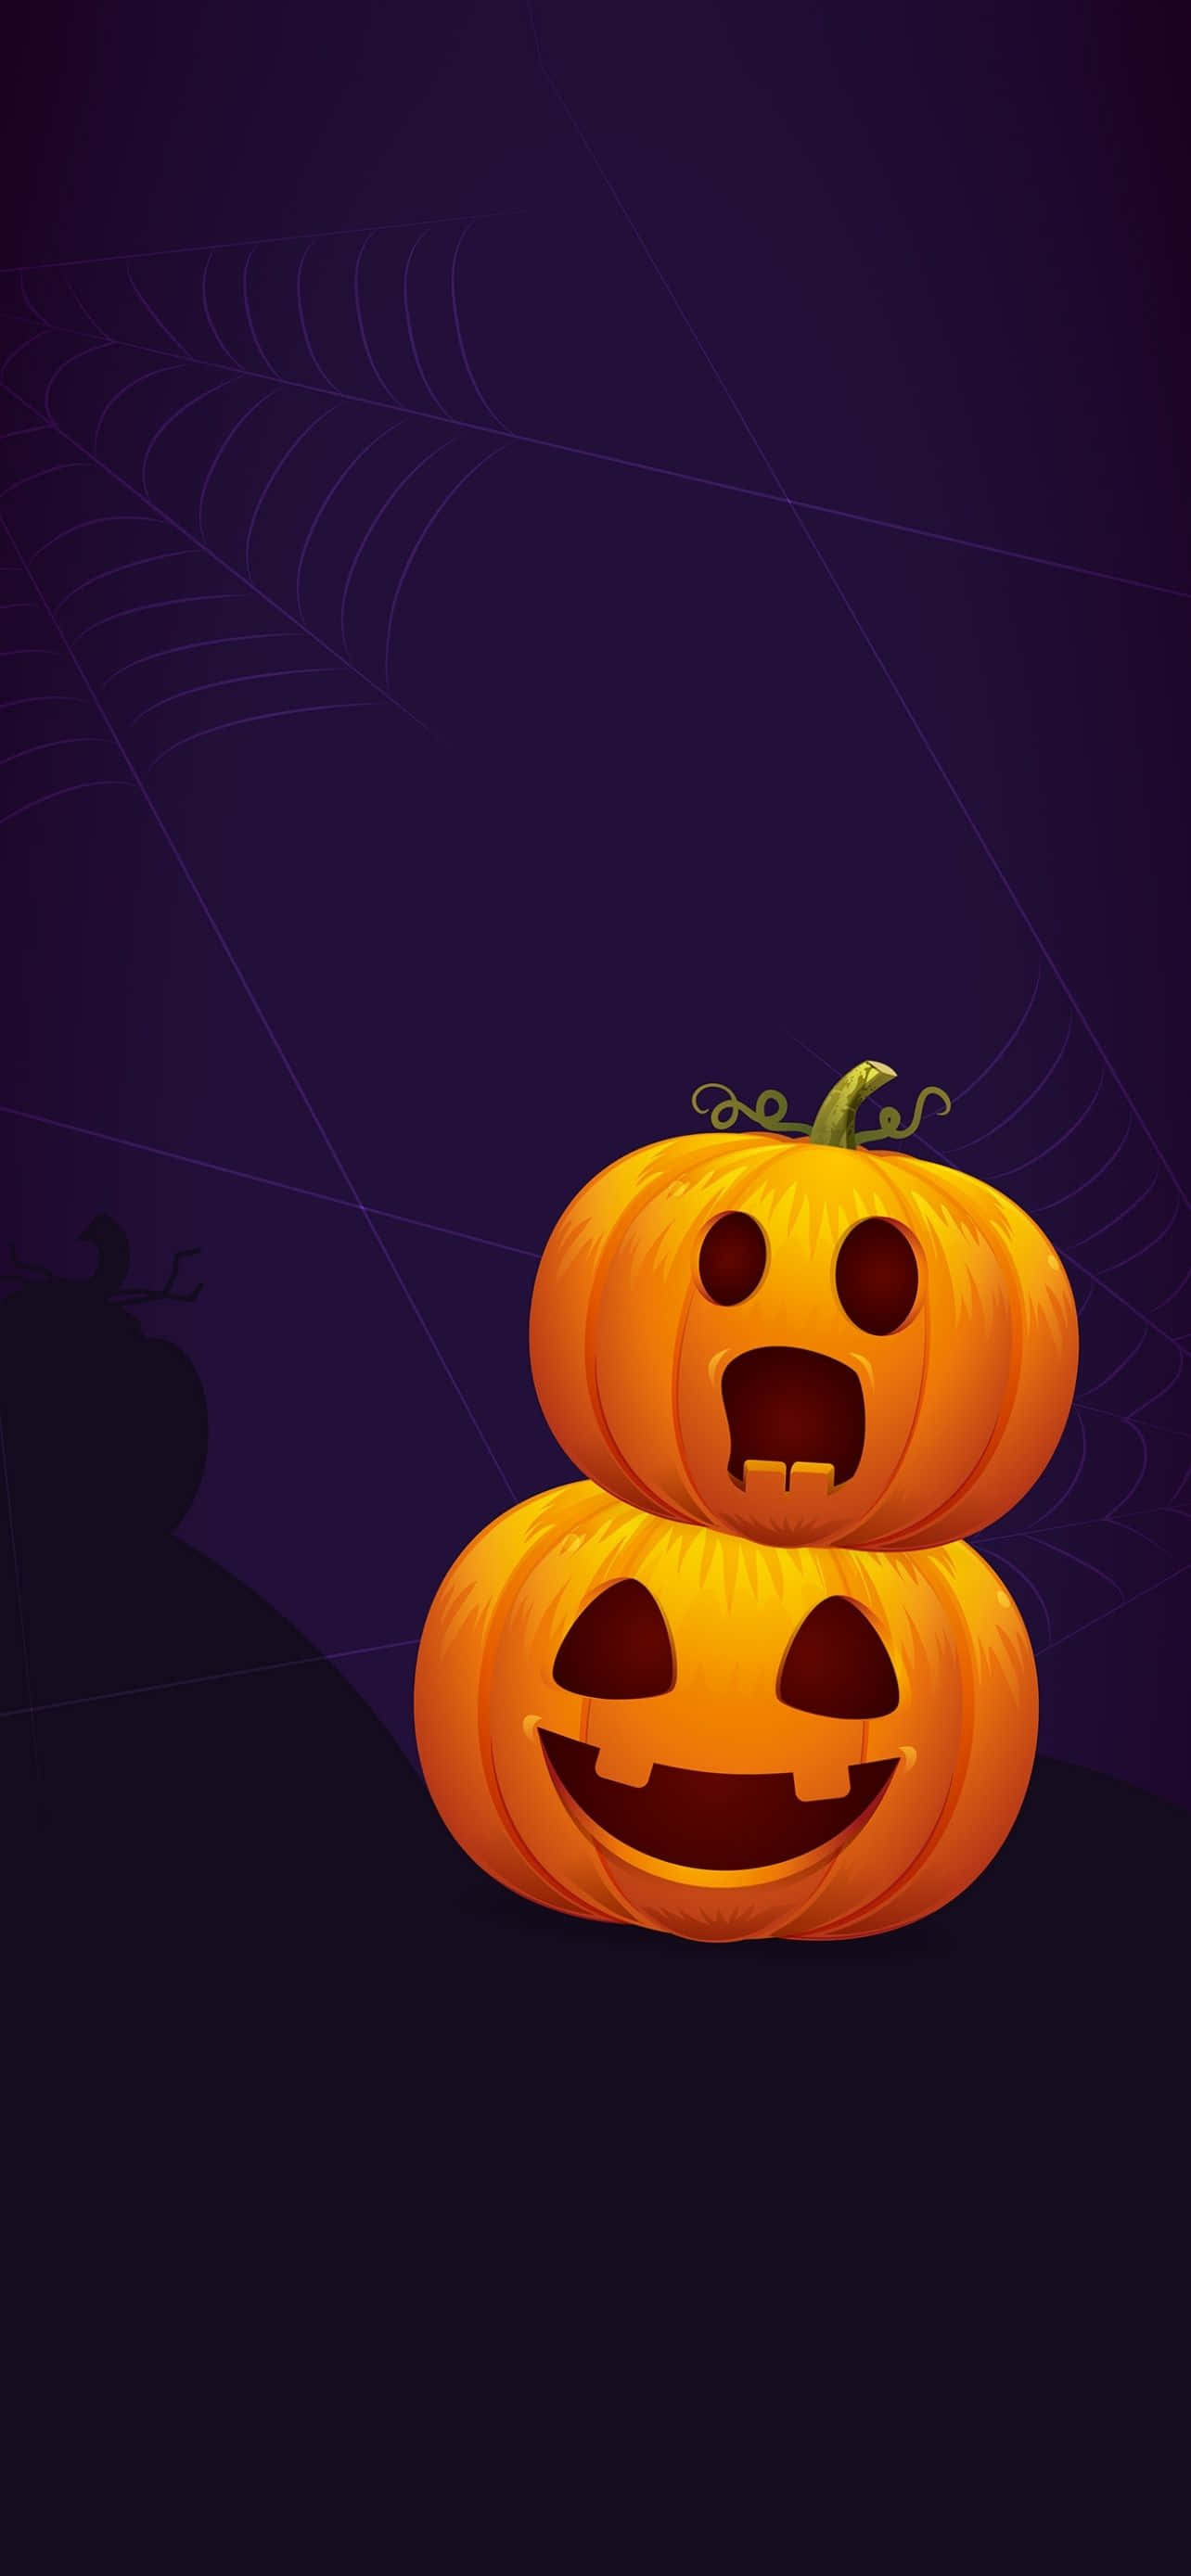 Passendzu Halloween Versetze Dein Iphone Mit Diesem Speziellen Hintergrund In Gruselstimmung.